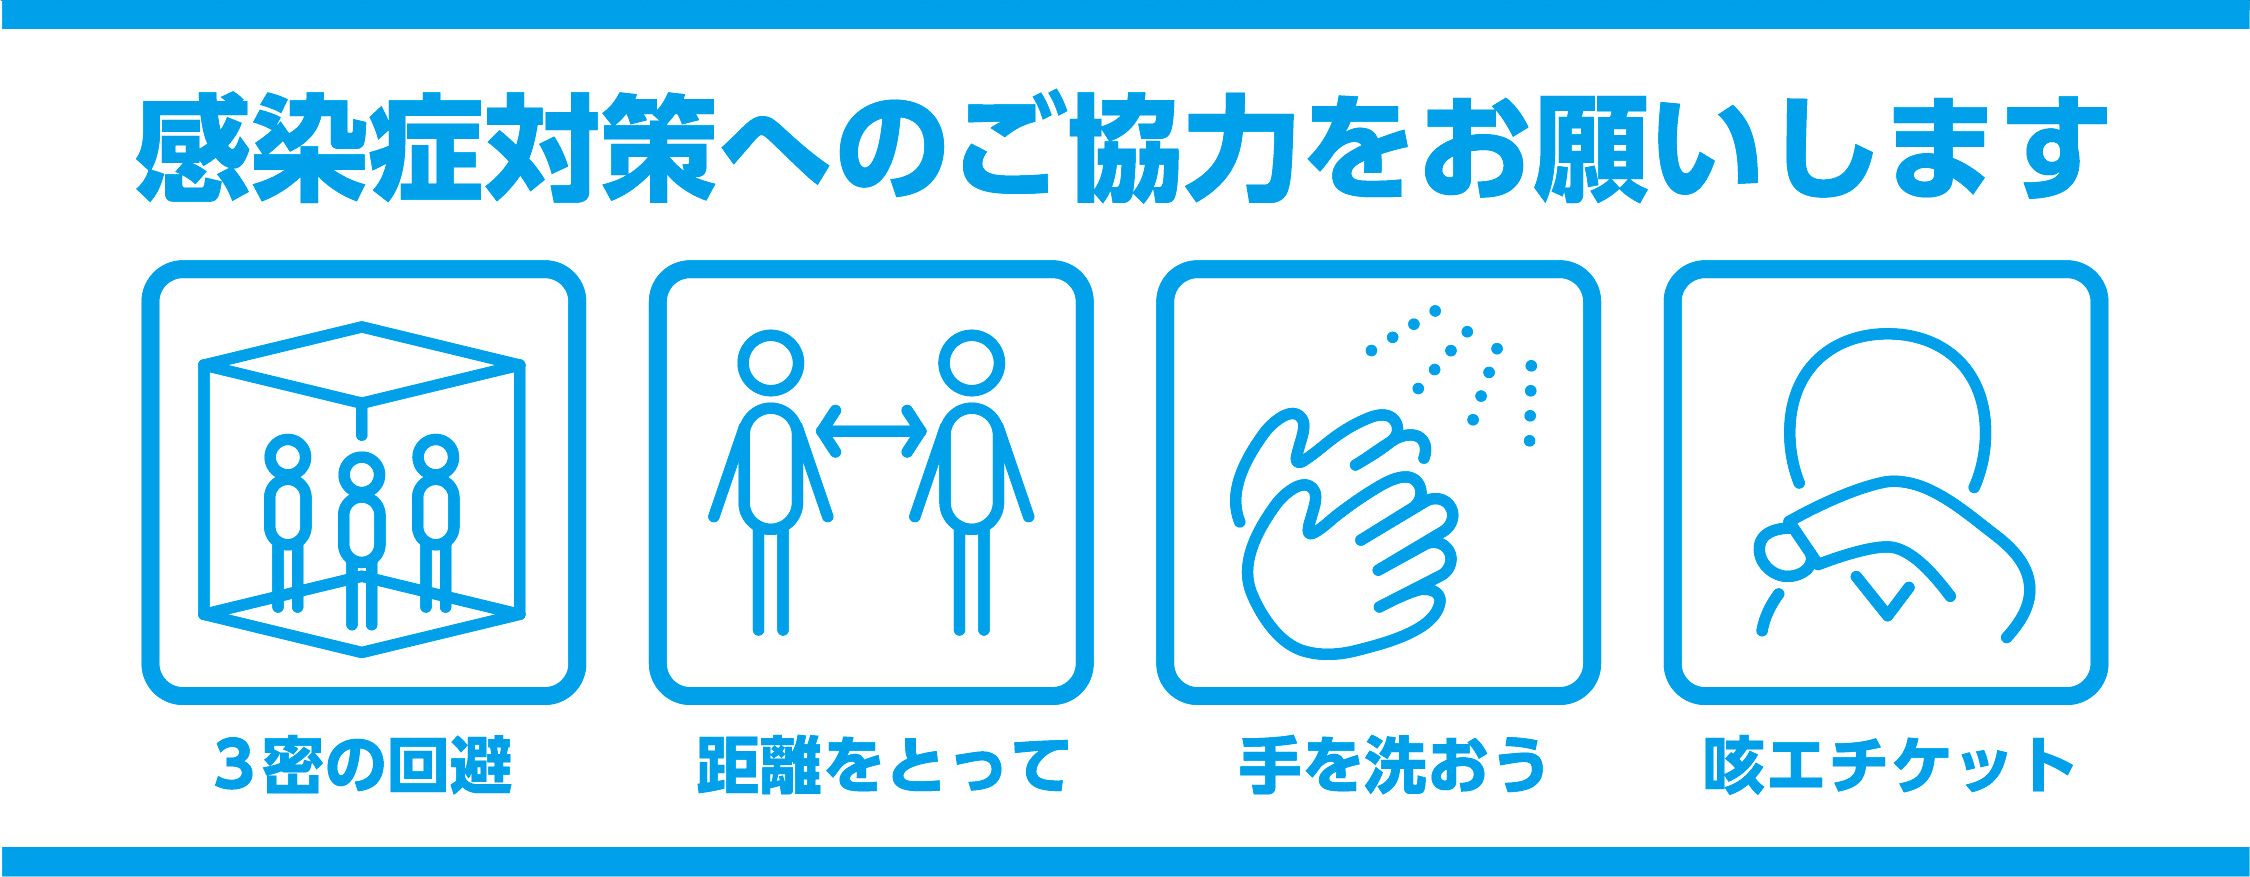 感染症対策へのご協力をお願いします 3密の回避 距離をとって 手を洗おう 咳エチケット